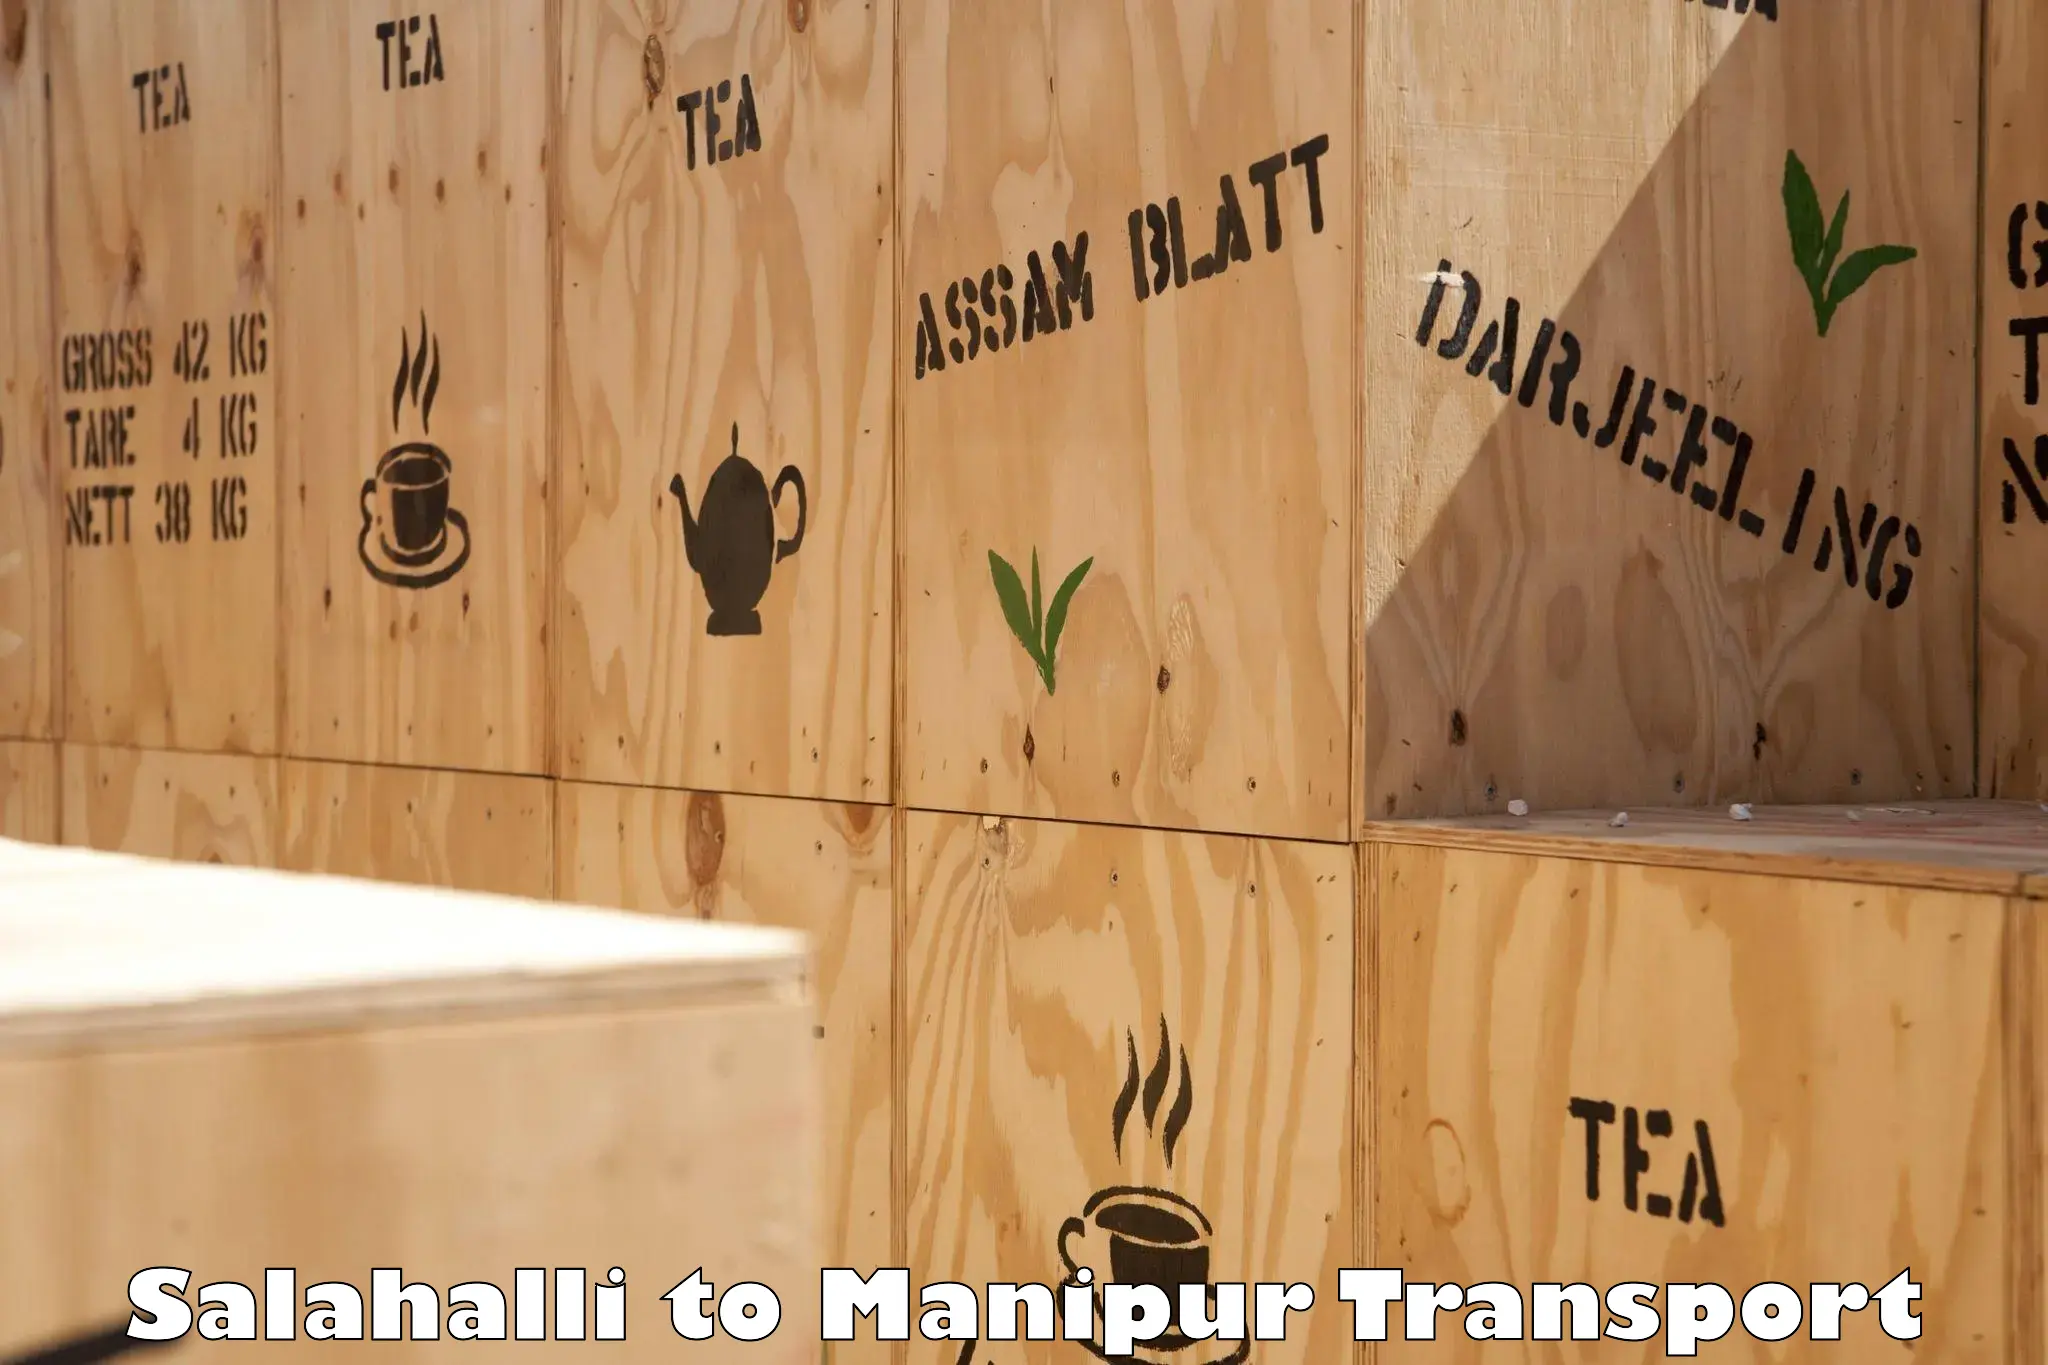 Daily parcel service transport Salahalli to Kaptipada